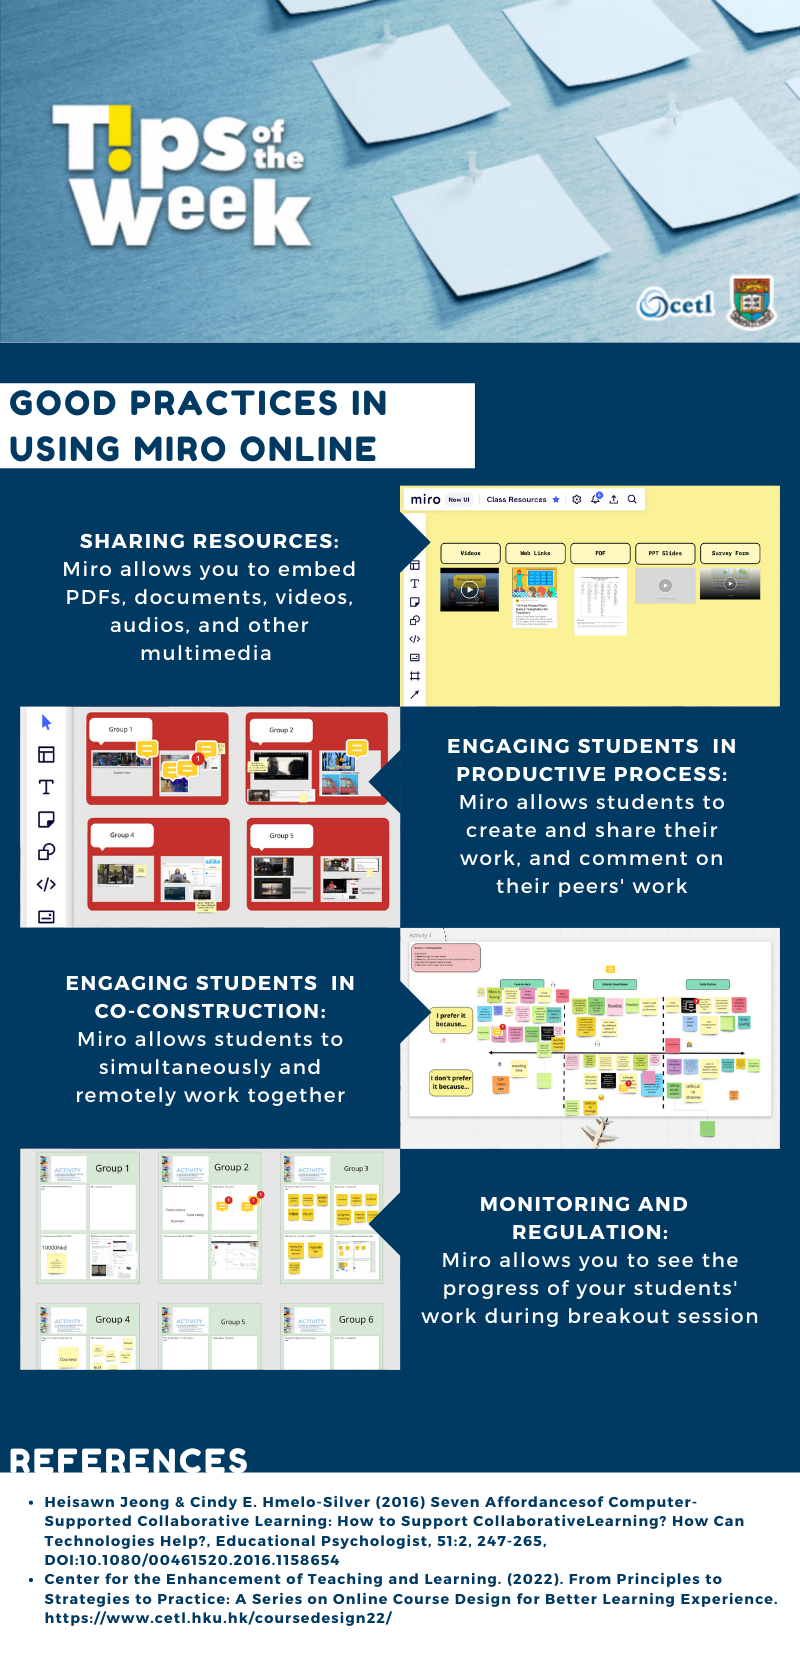 Good Practices in Using Miro Online